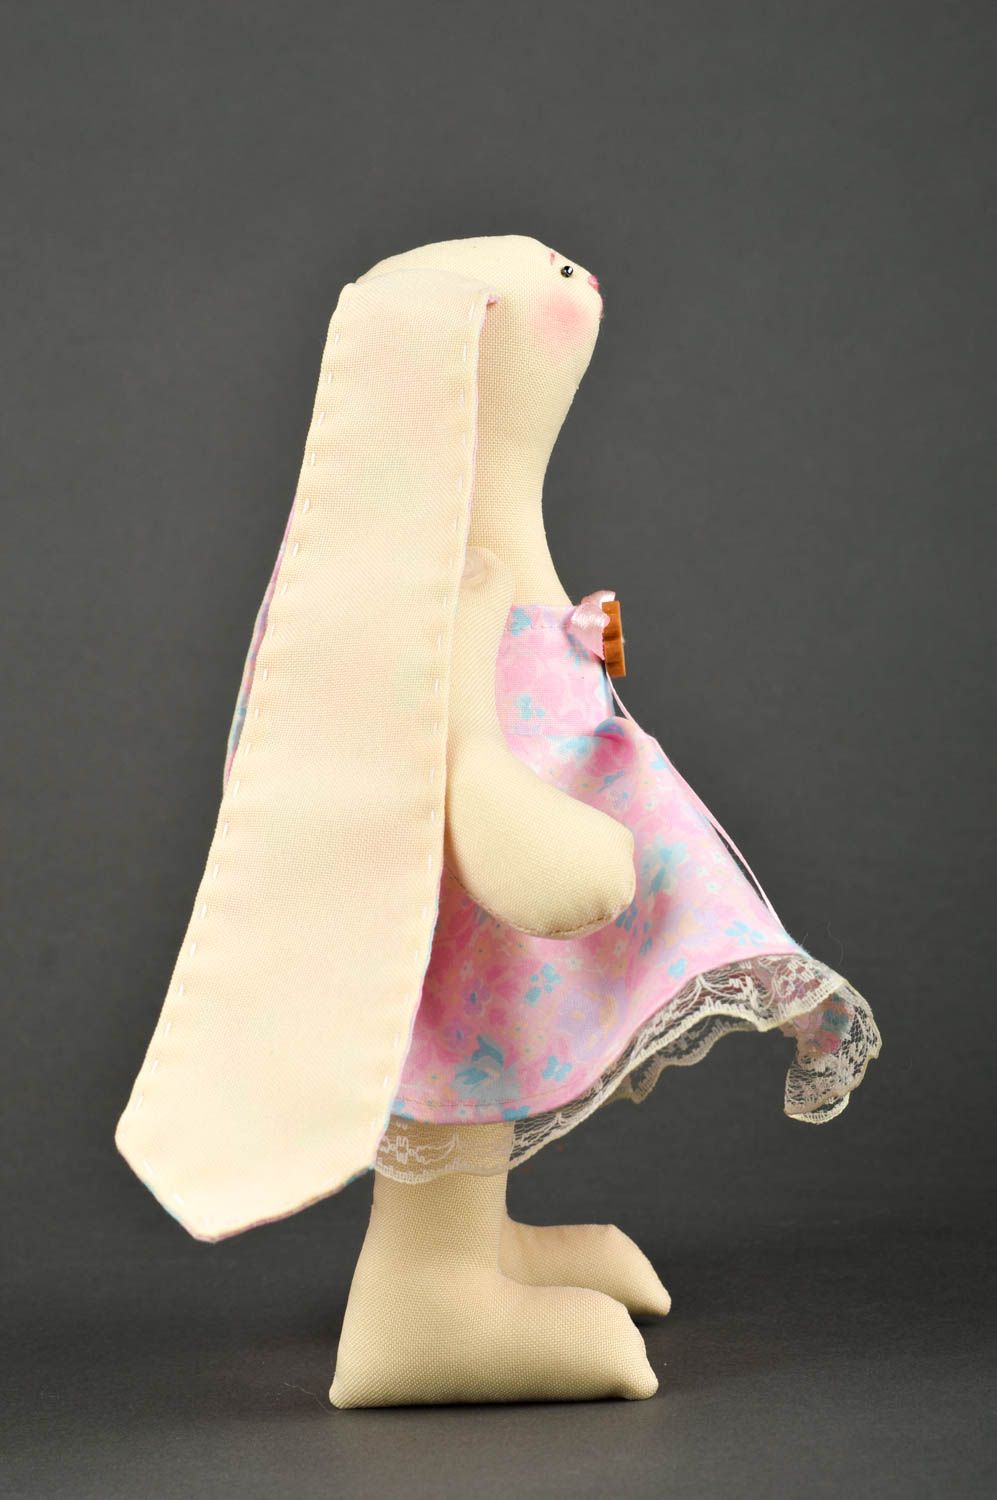 Игрушка заяц ручной работы авторская игрушка стильный подарок из ткани фото 3